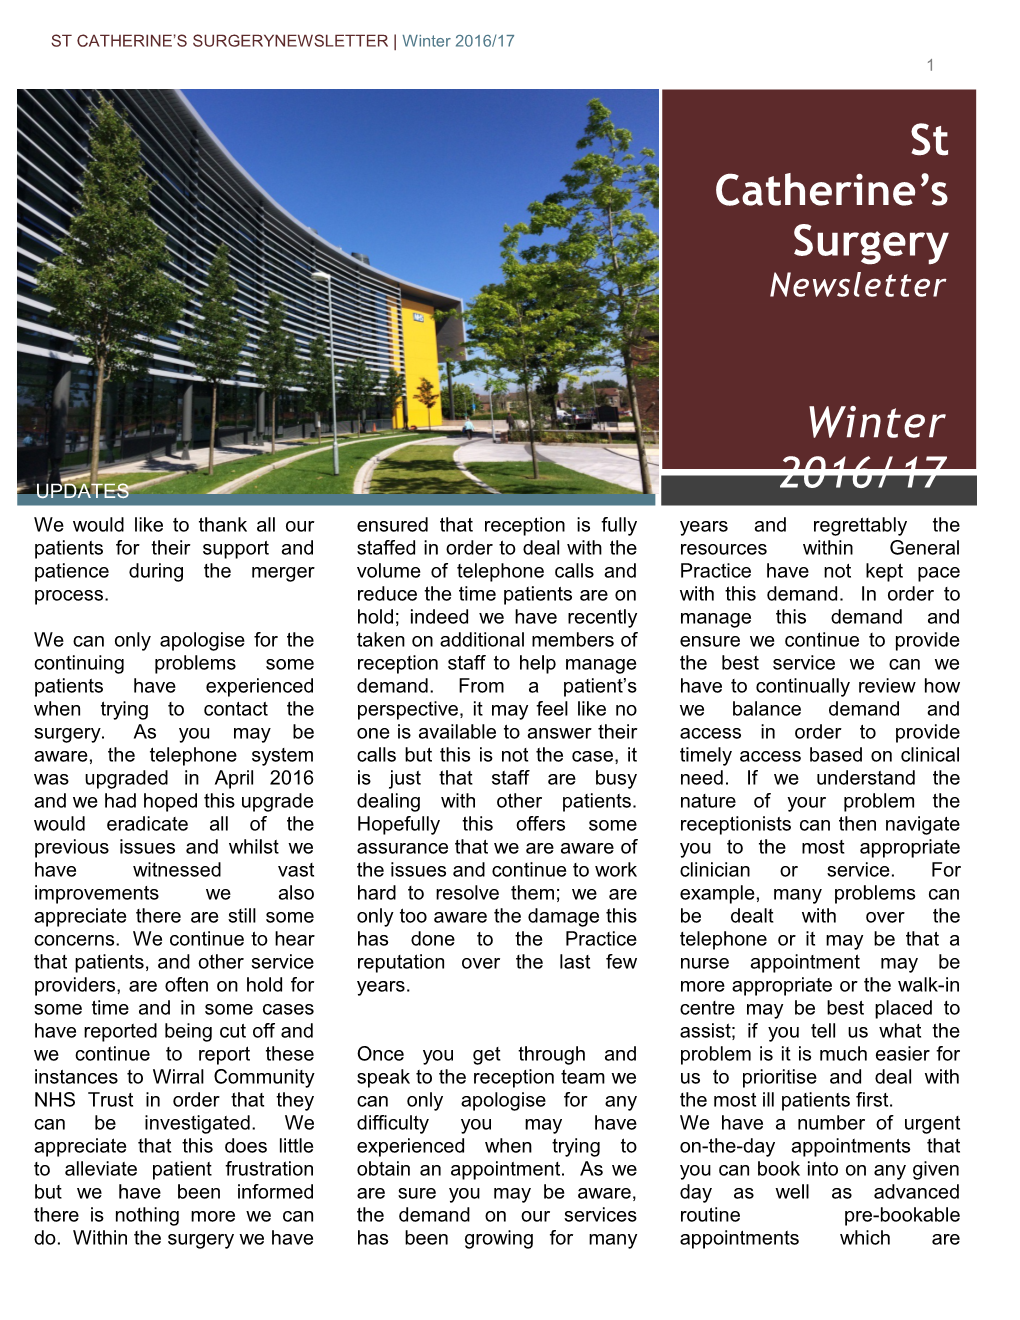 St Catherine S Surgerynewsletter Winter